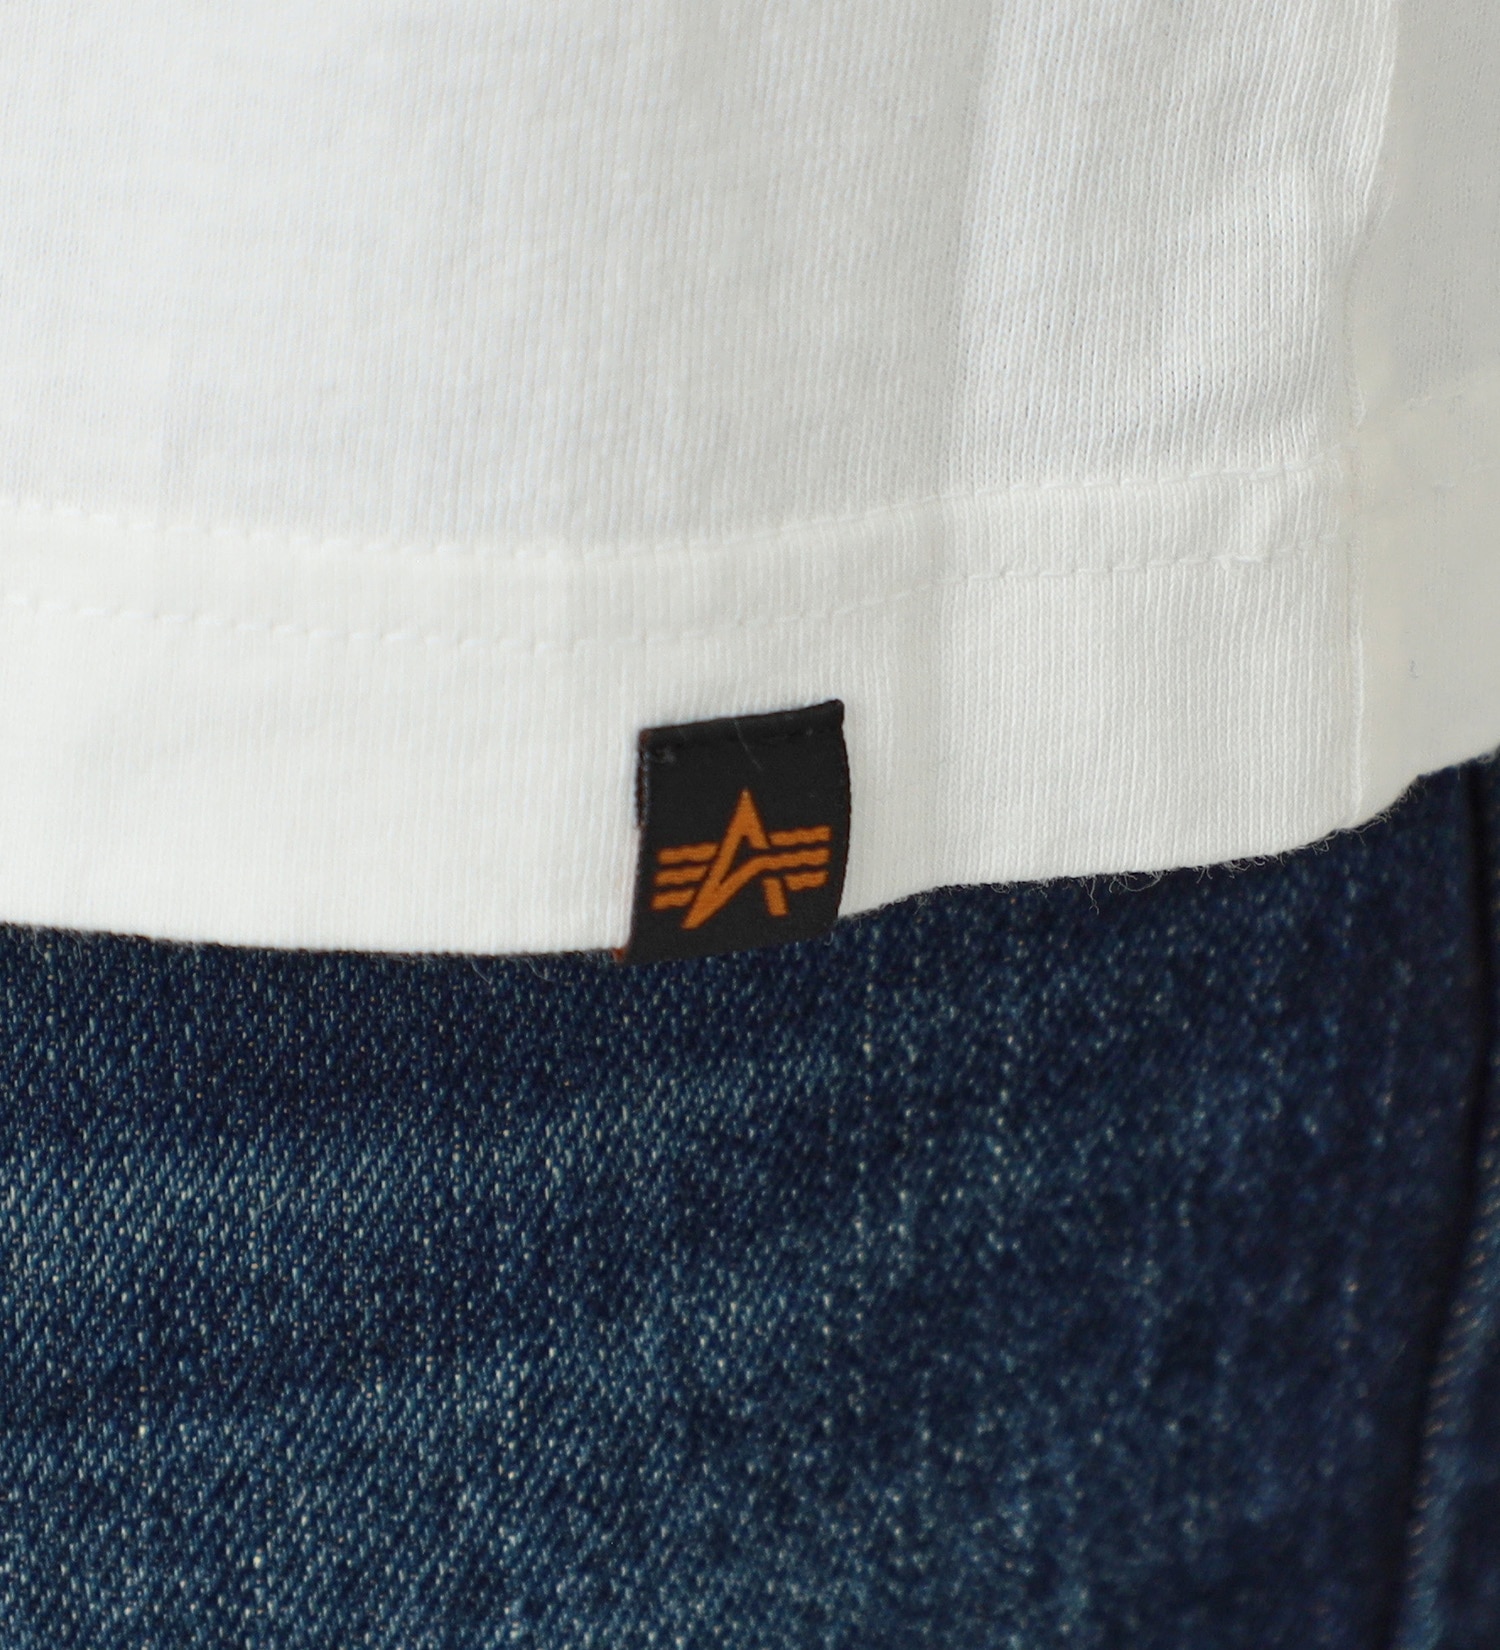 ALPHA(アルファ)の【GW SALE】Aマークボックスロゴ ワンポイント長袖Tシャツ|トップス/Tシャツ/カットソー/メンズ|ホワイト